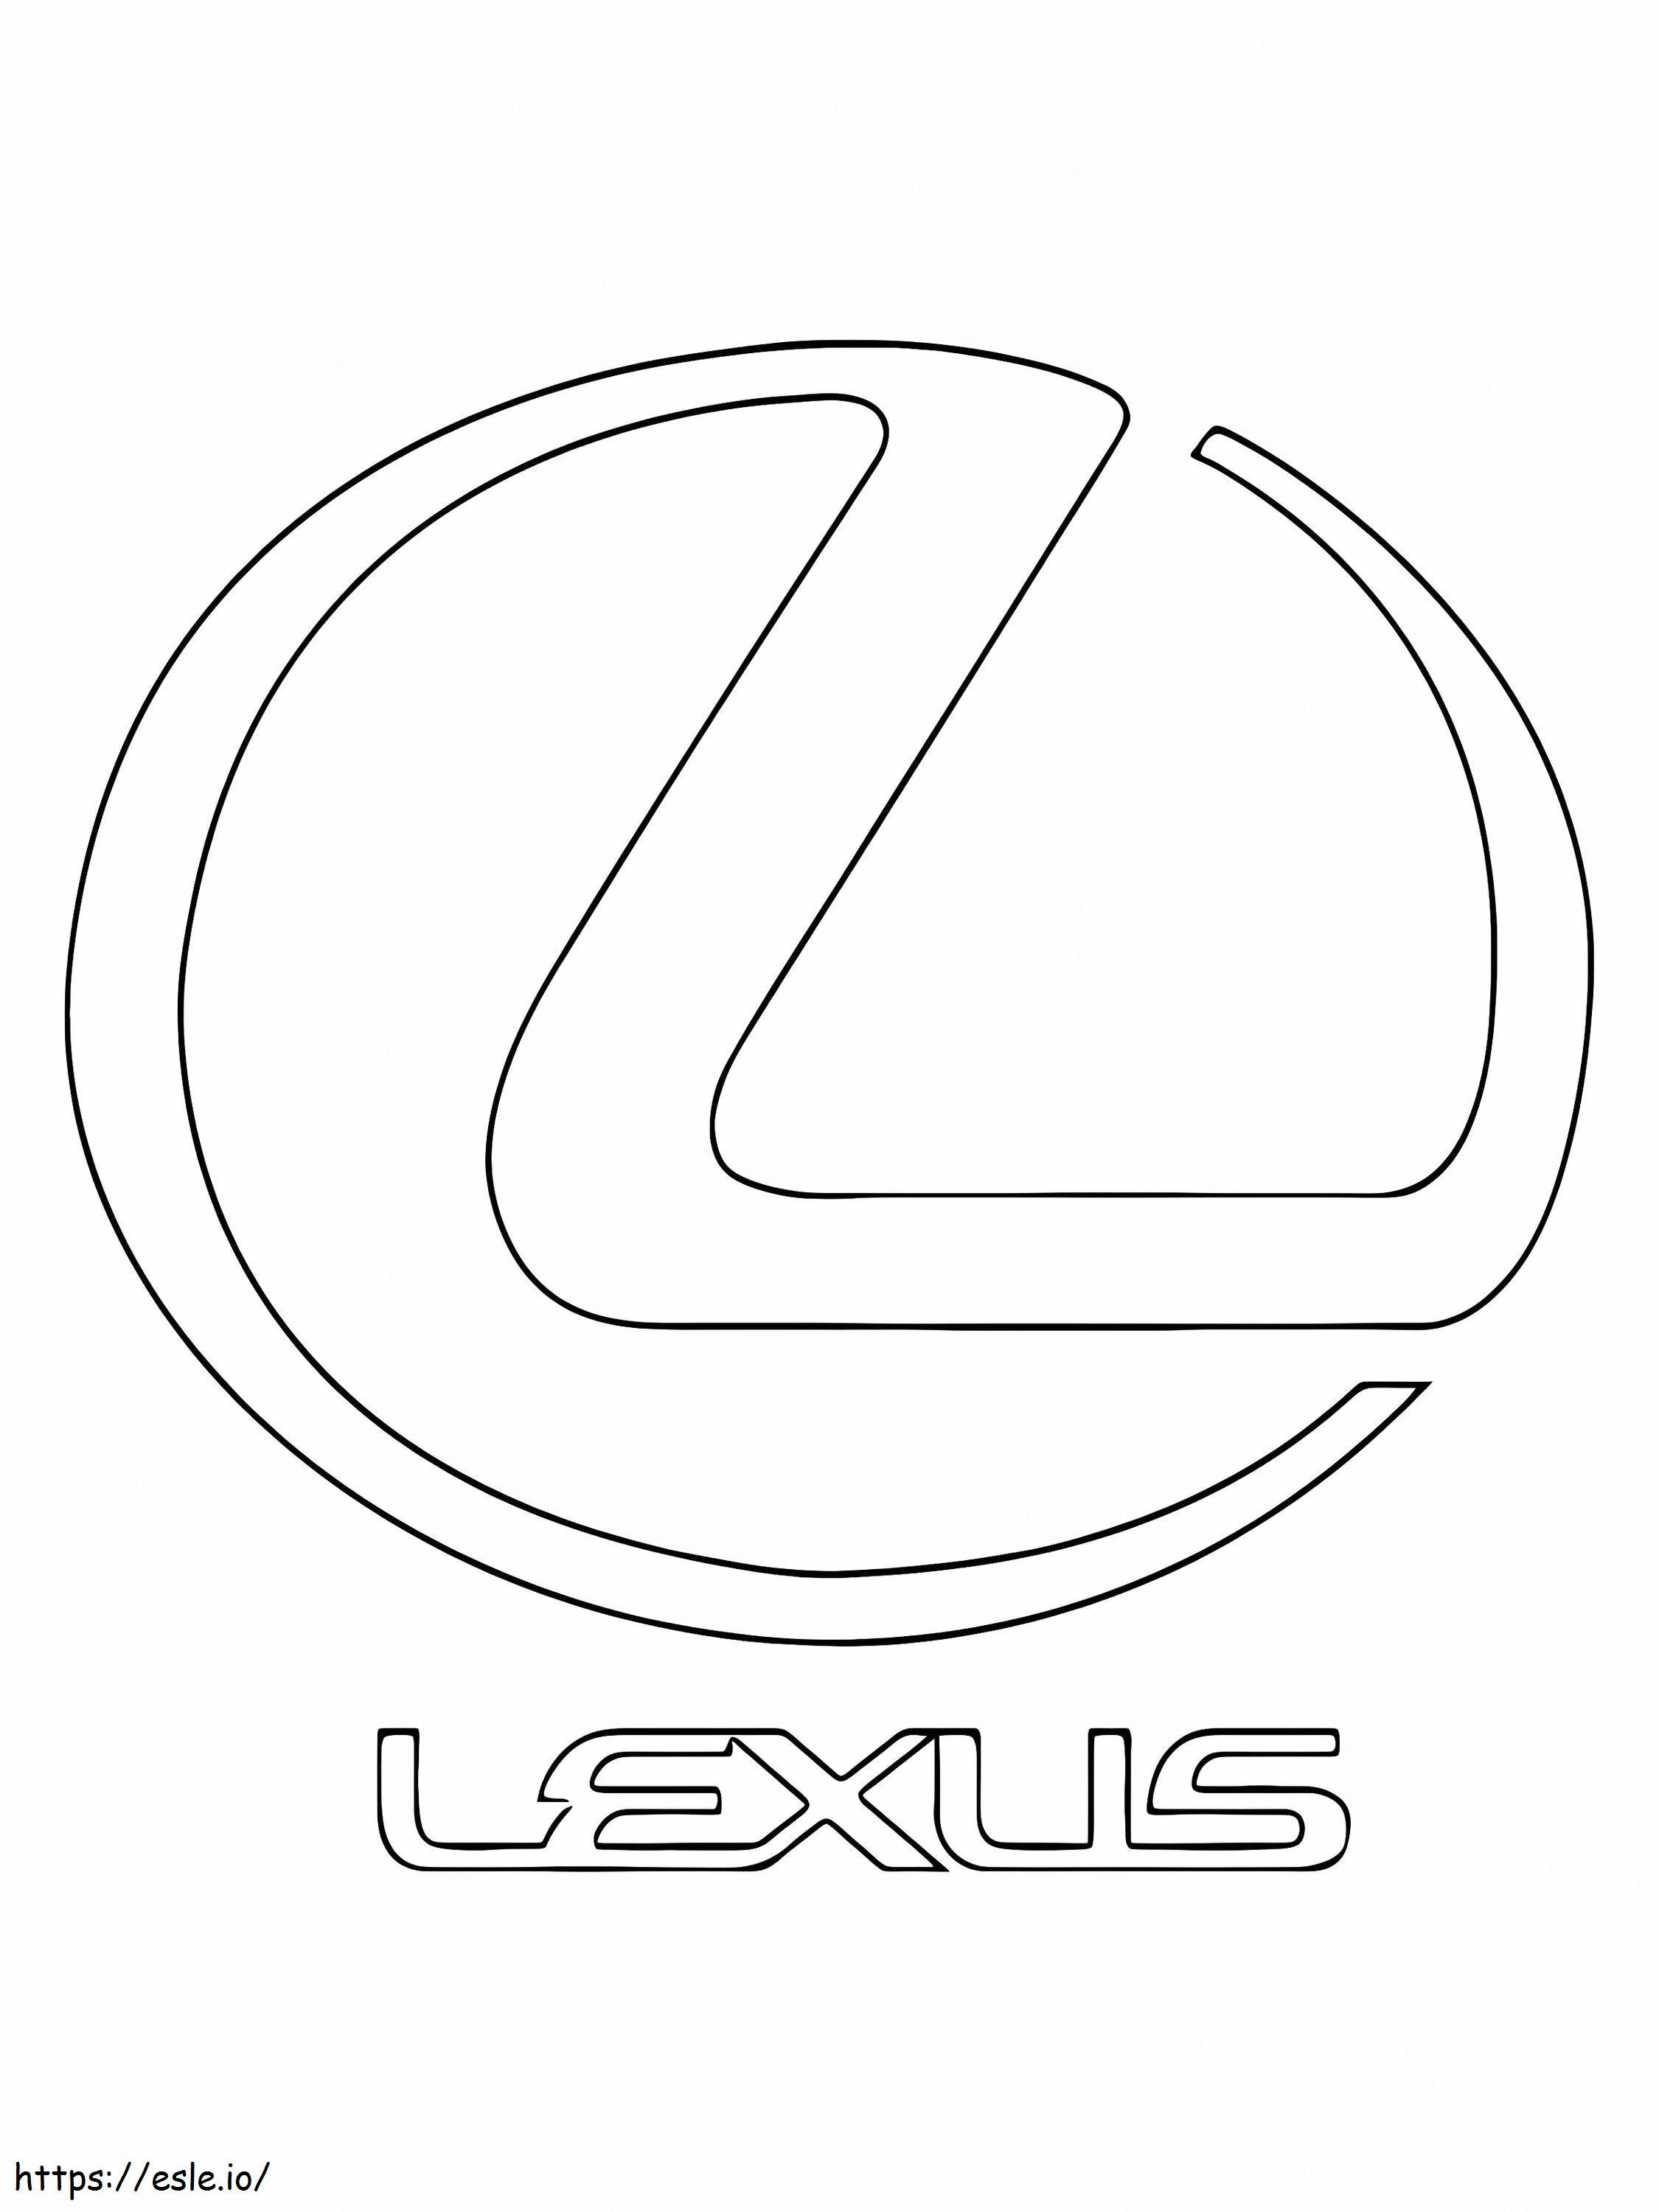 Logo dell'auto Lexus da colorare